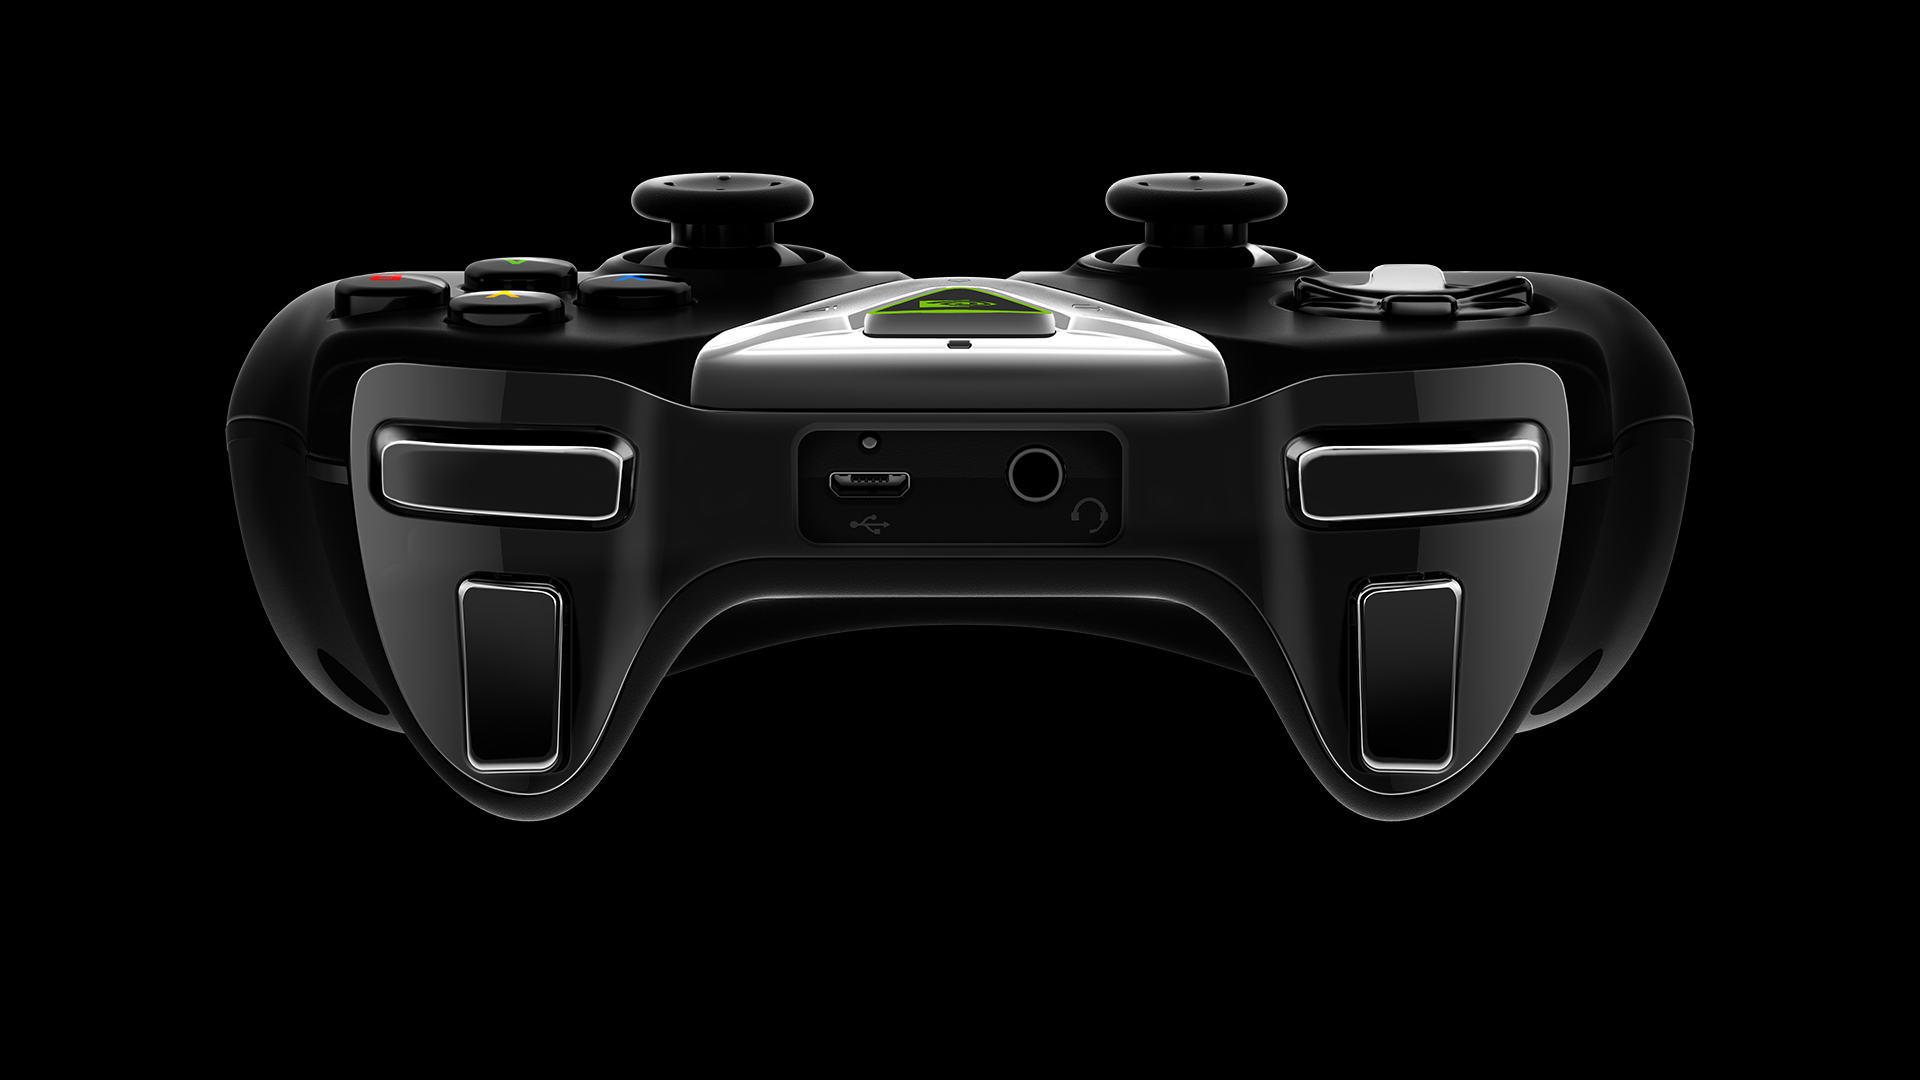 SHIELD コントローラーのゲーム用ヘッドセットジャックにお気に入りのステレオヘッドセットを接続すれば、友人と簡単にゲームチャットできます。